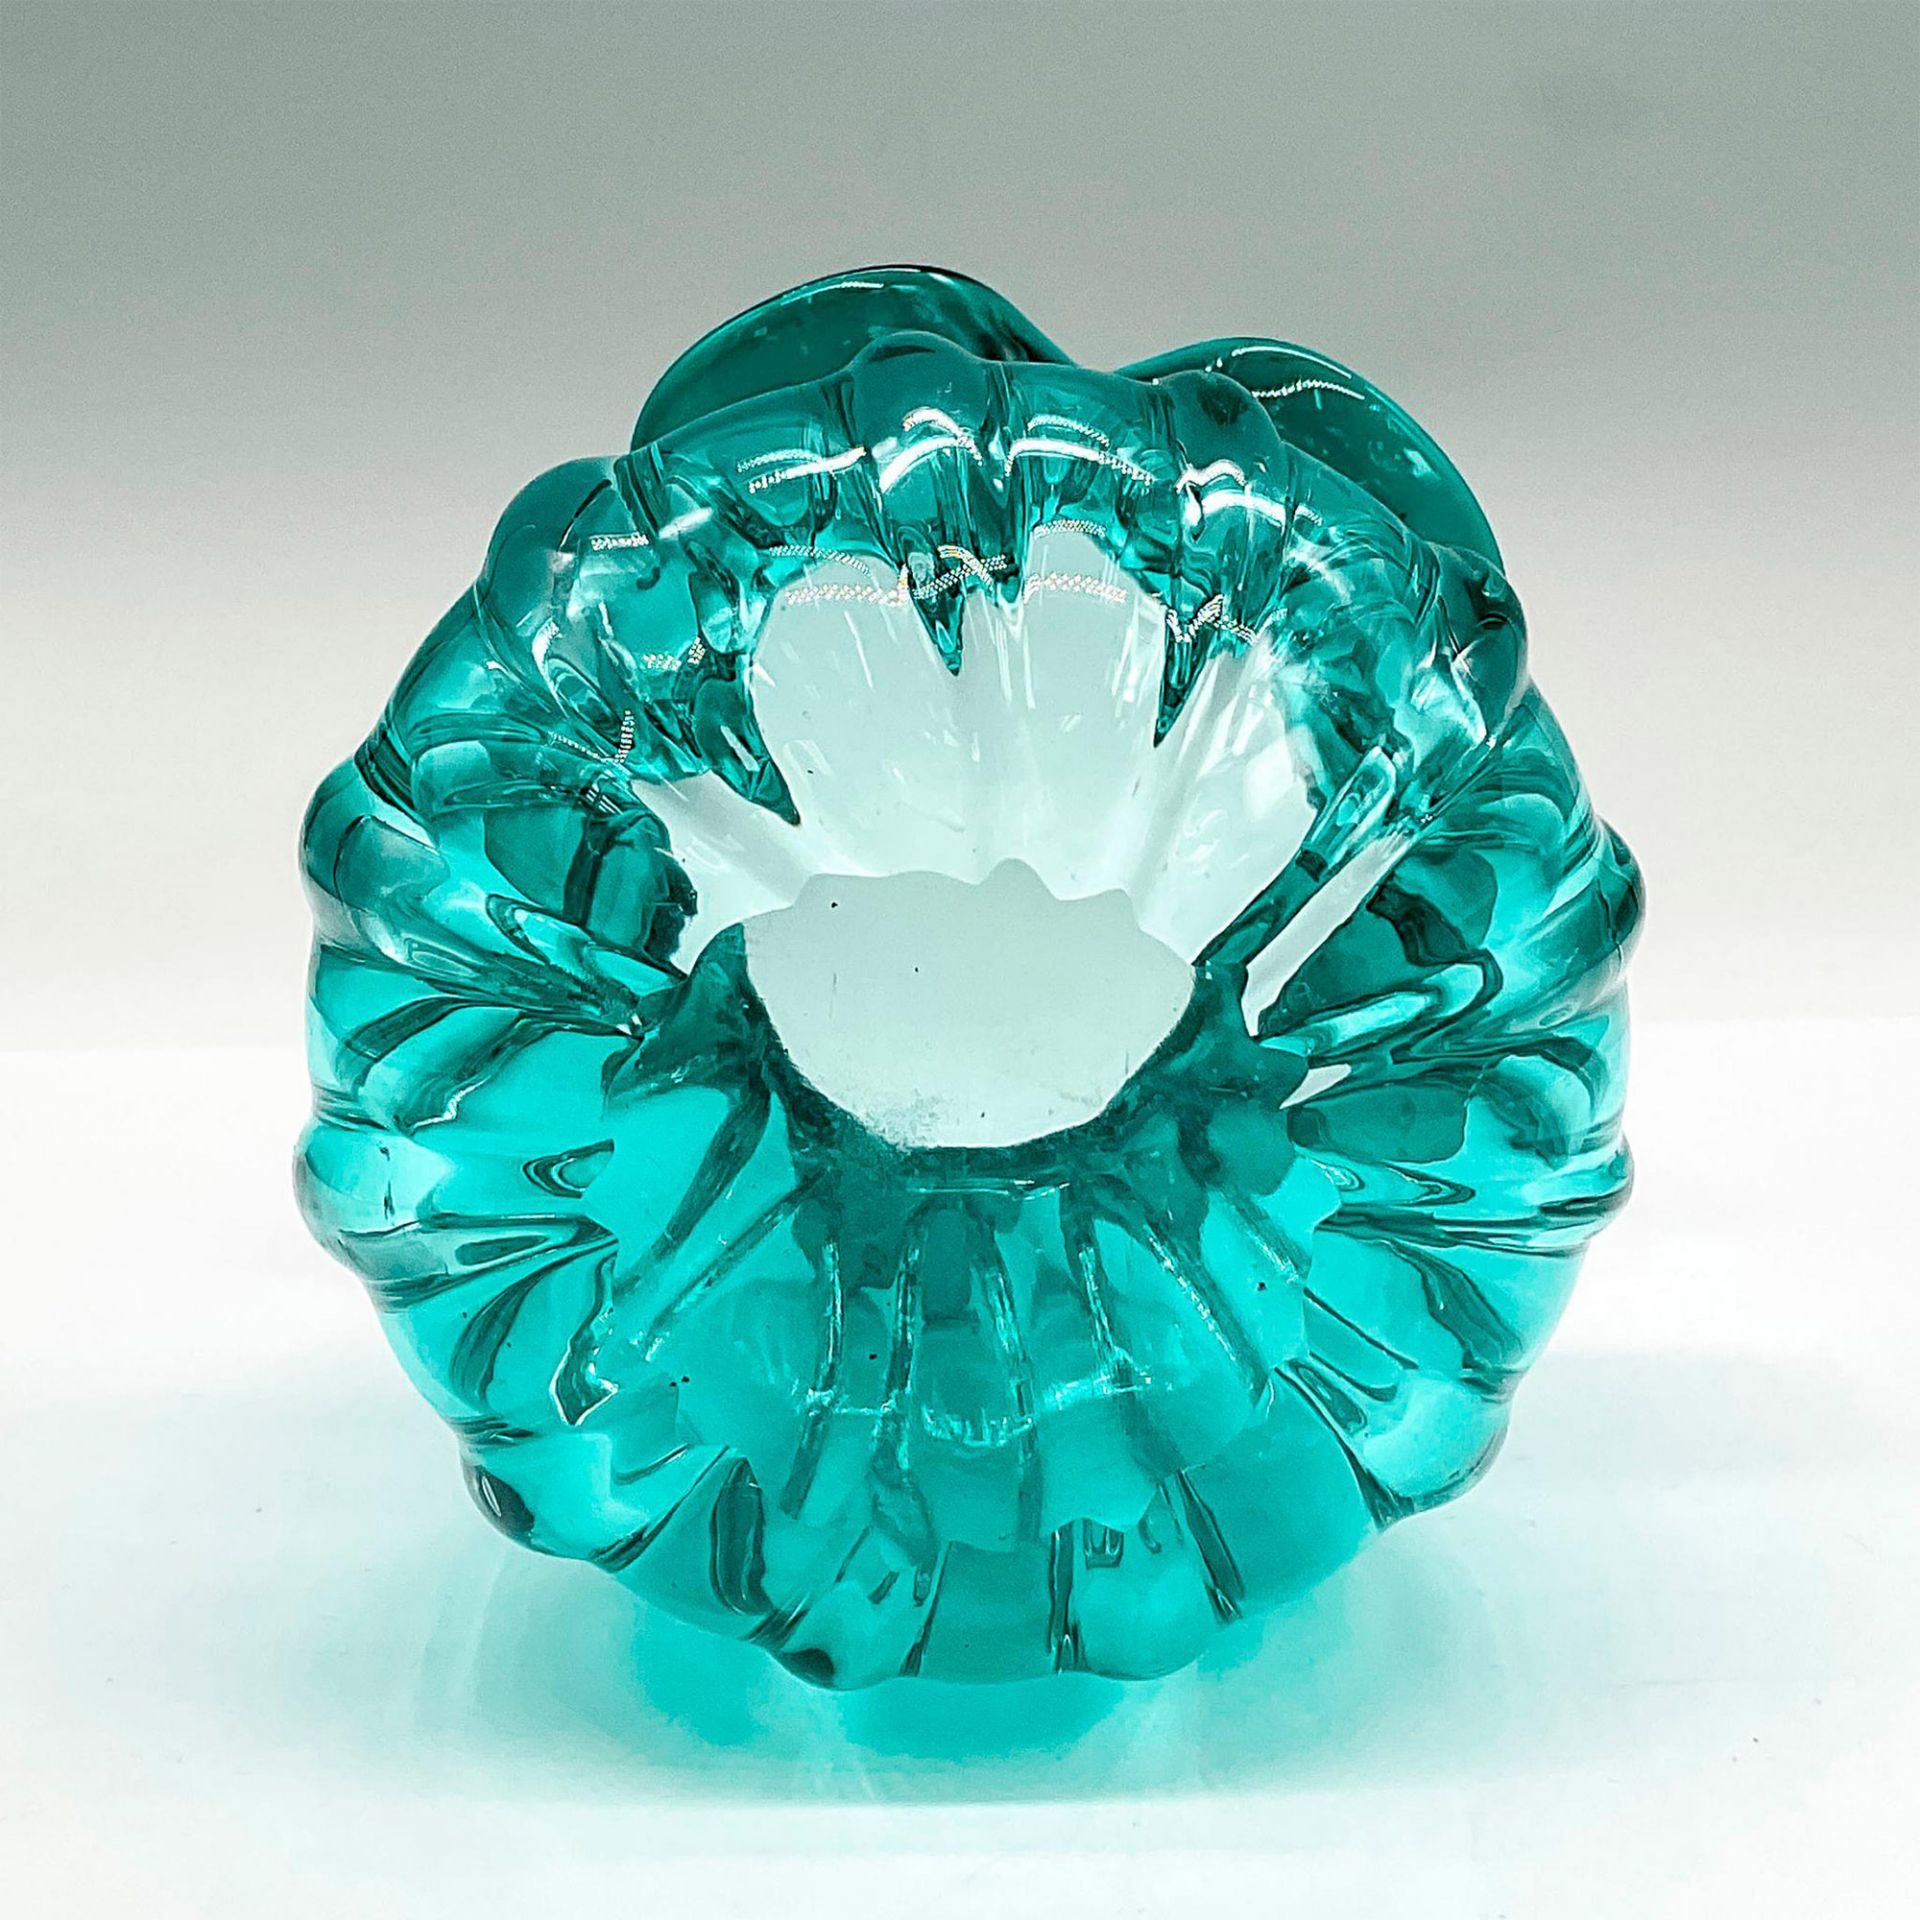 Turquoise Glass Ruffle Vase - Image 3 of 3